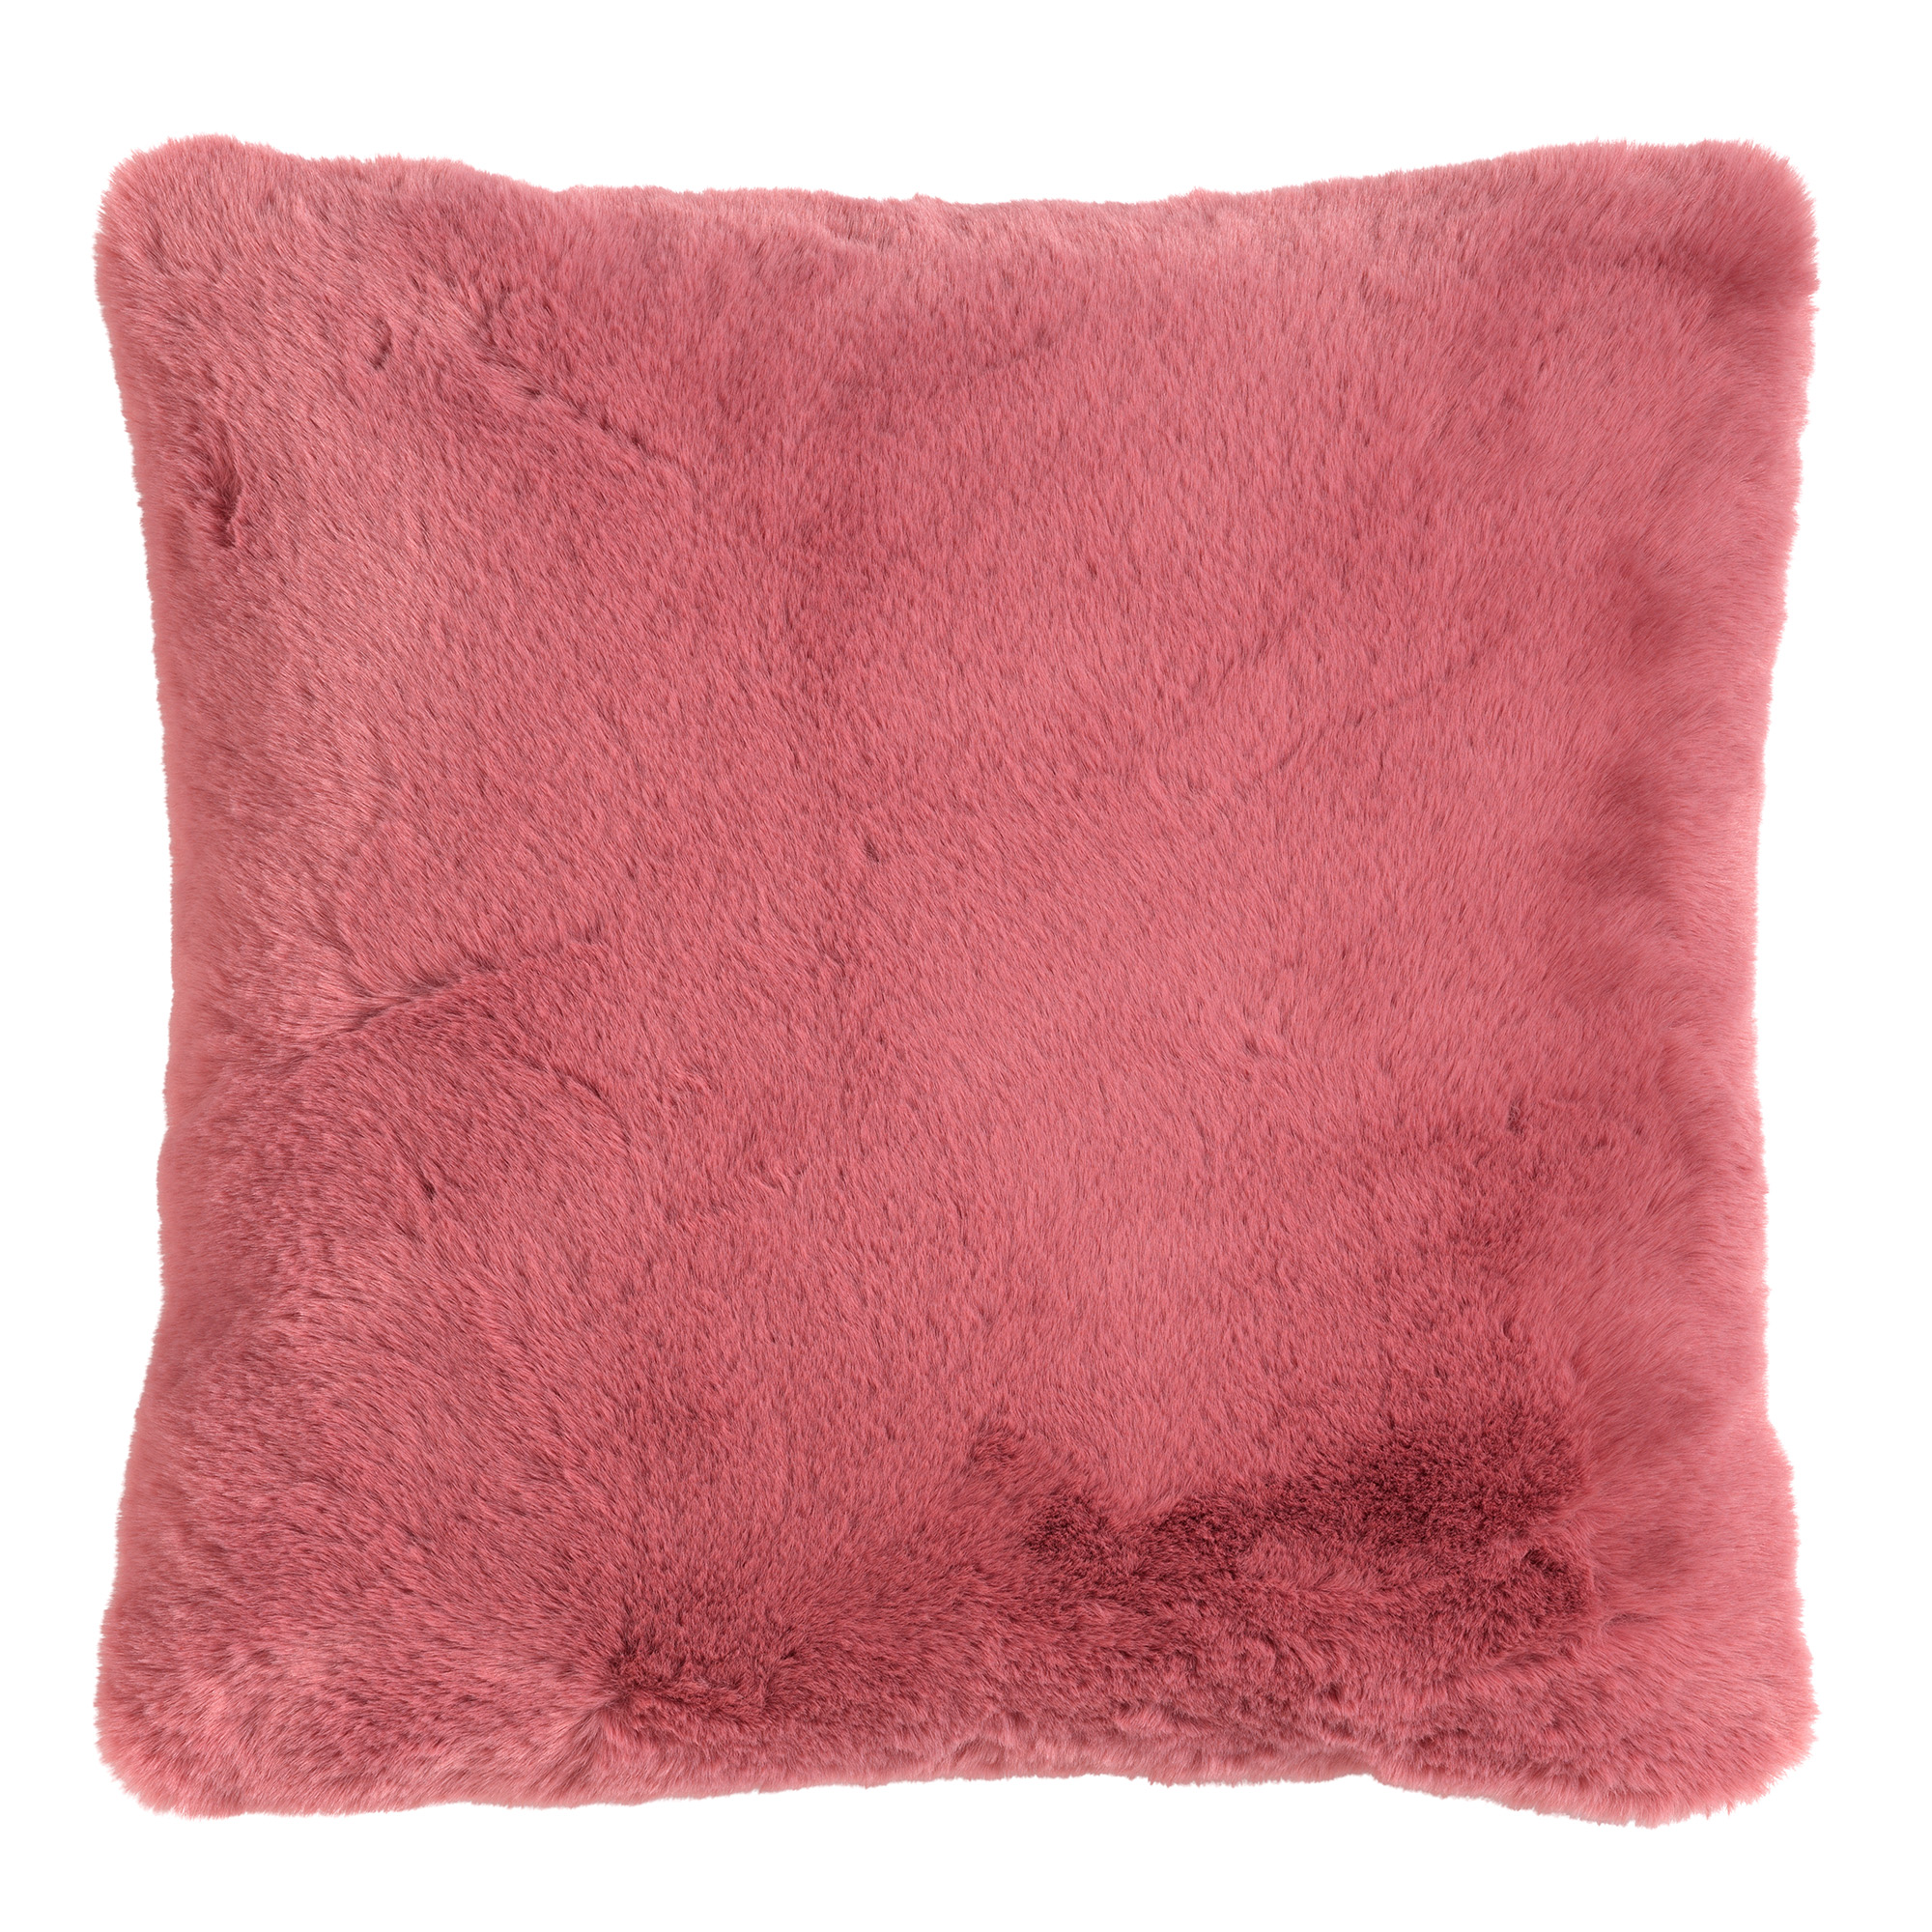 ZAYA - Sierkussen 45x45 cm - bontlook - effen kleur - Dusty Rose - roze